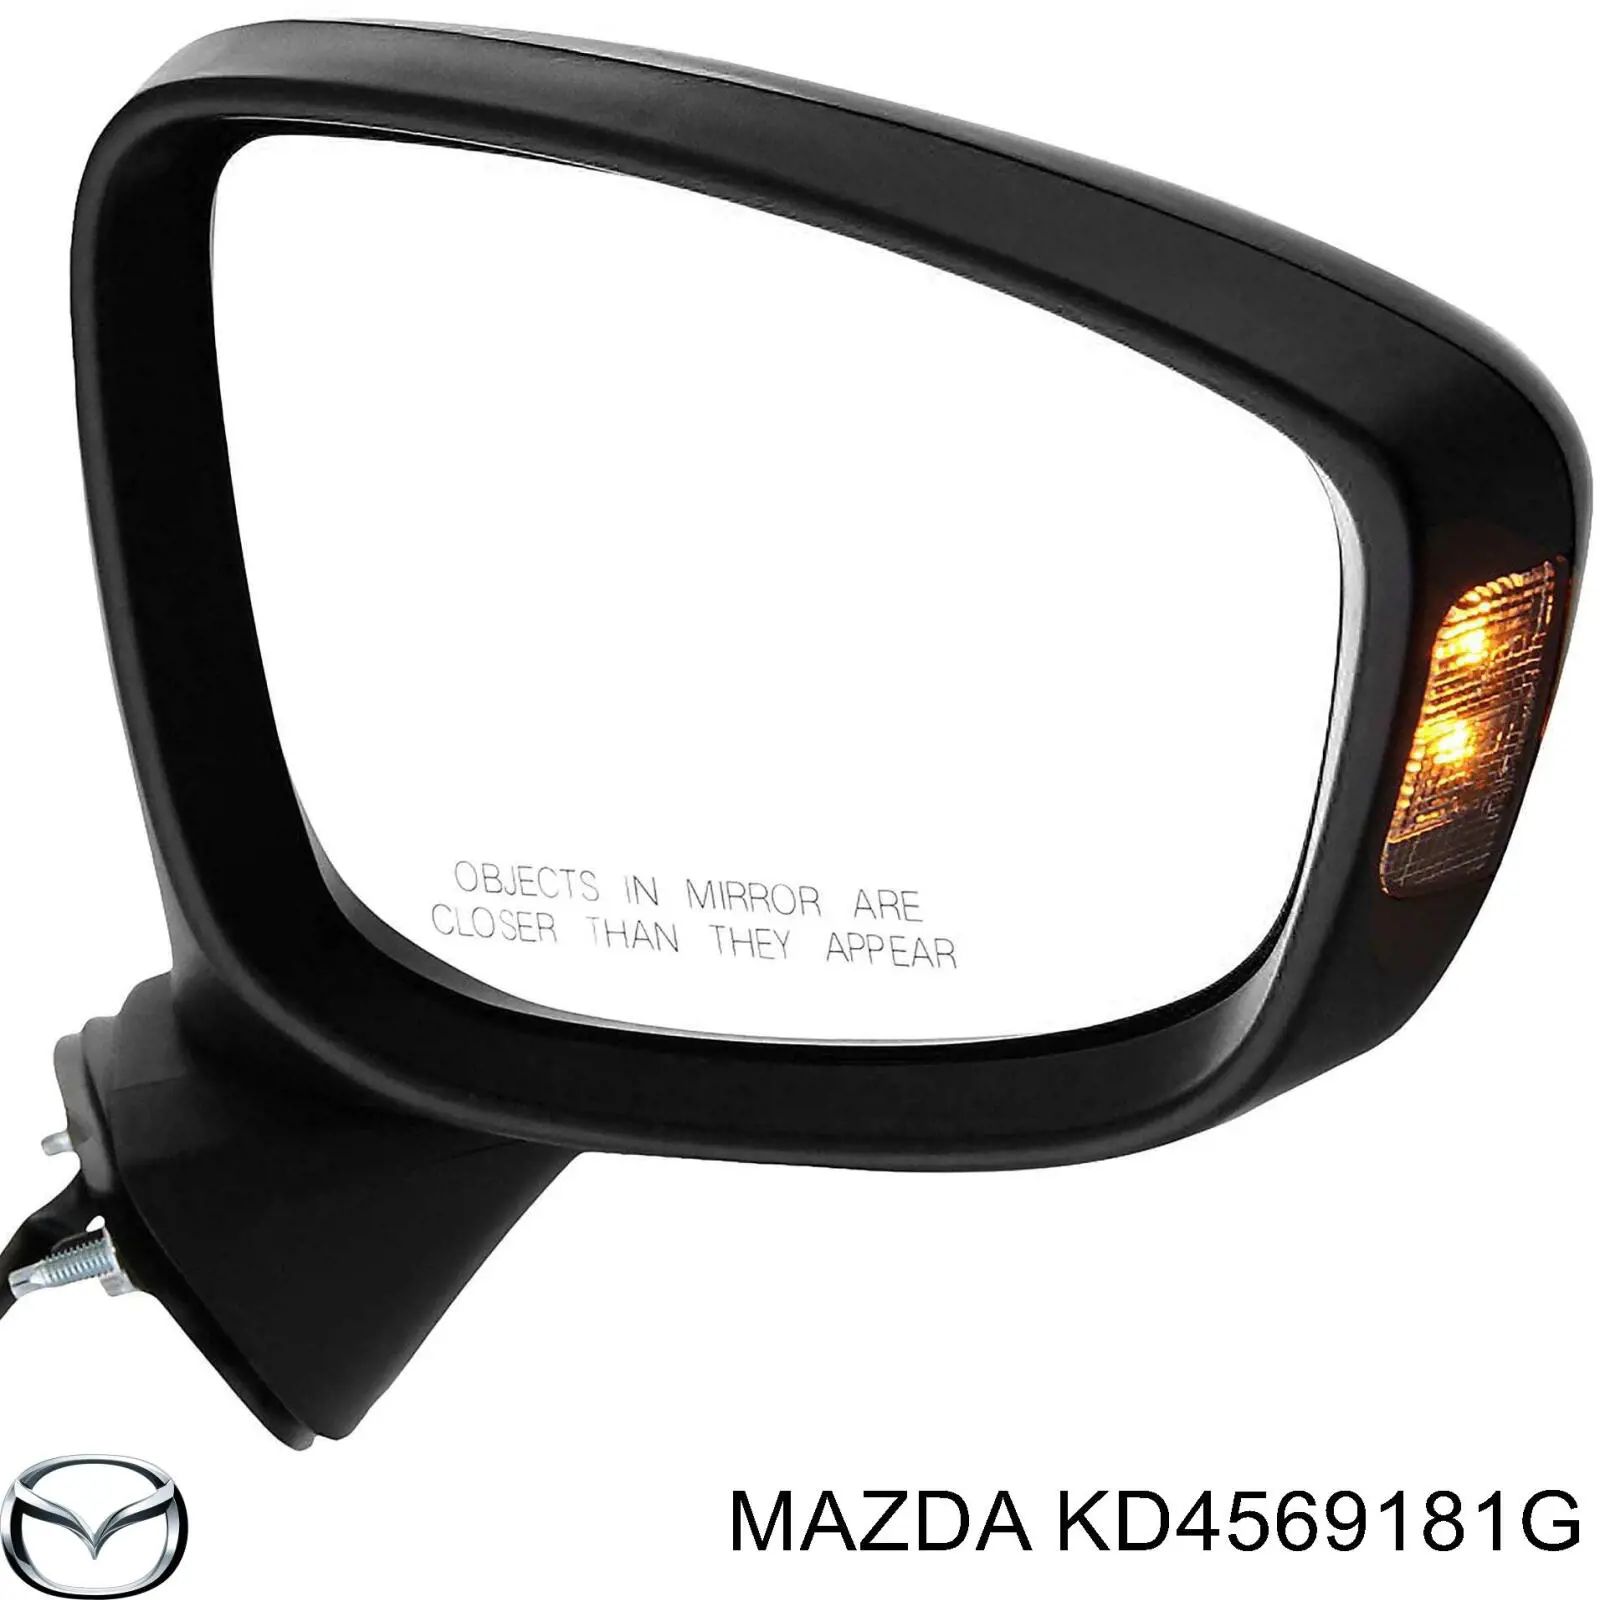 KD5369181J Mazda espejo retrovisor izquierdo